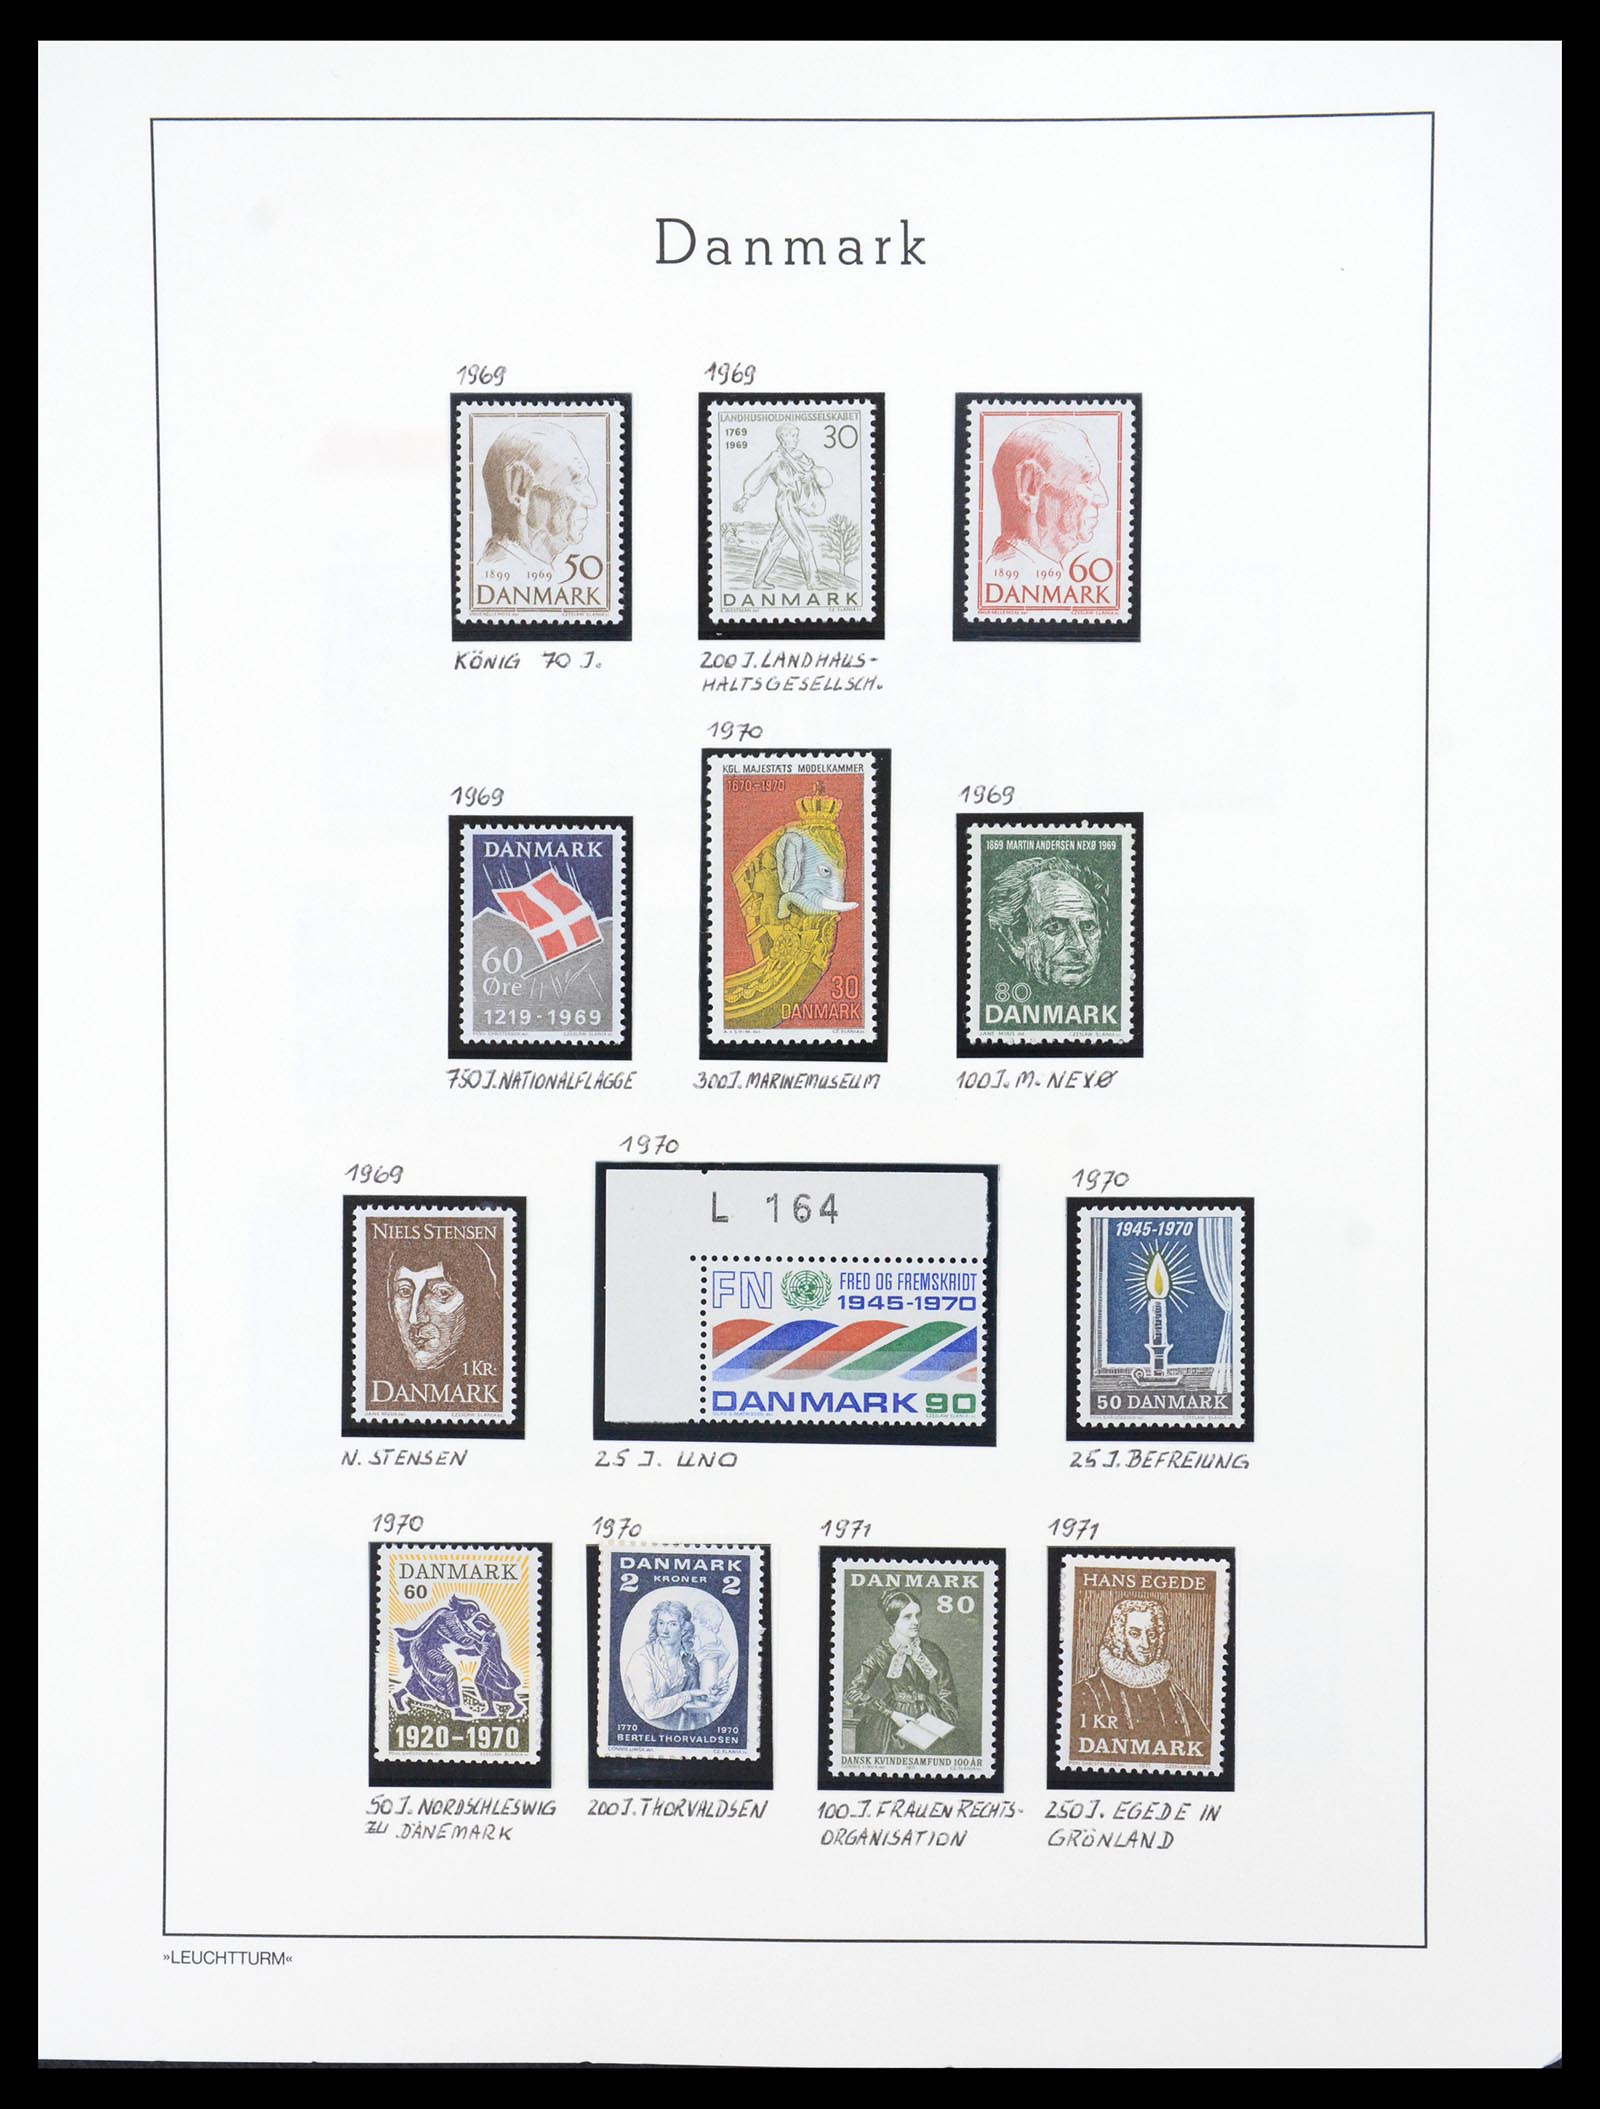 36612 103 - Stamp collection 36612 Denemarken 1851-1990.